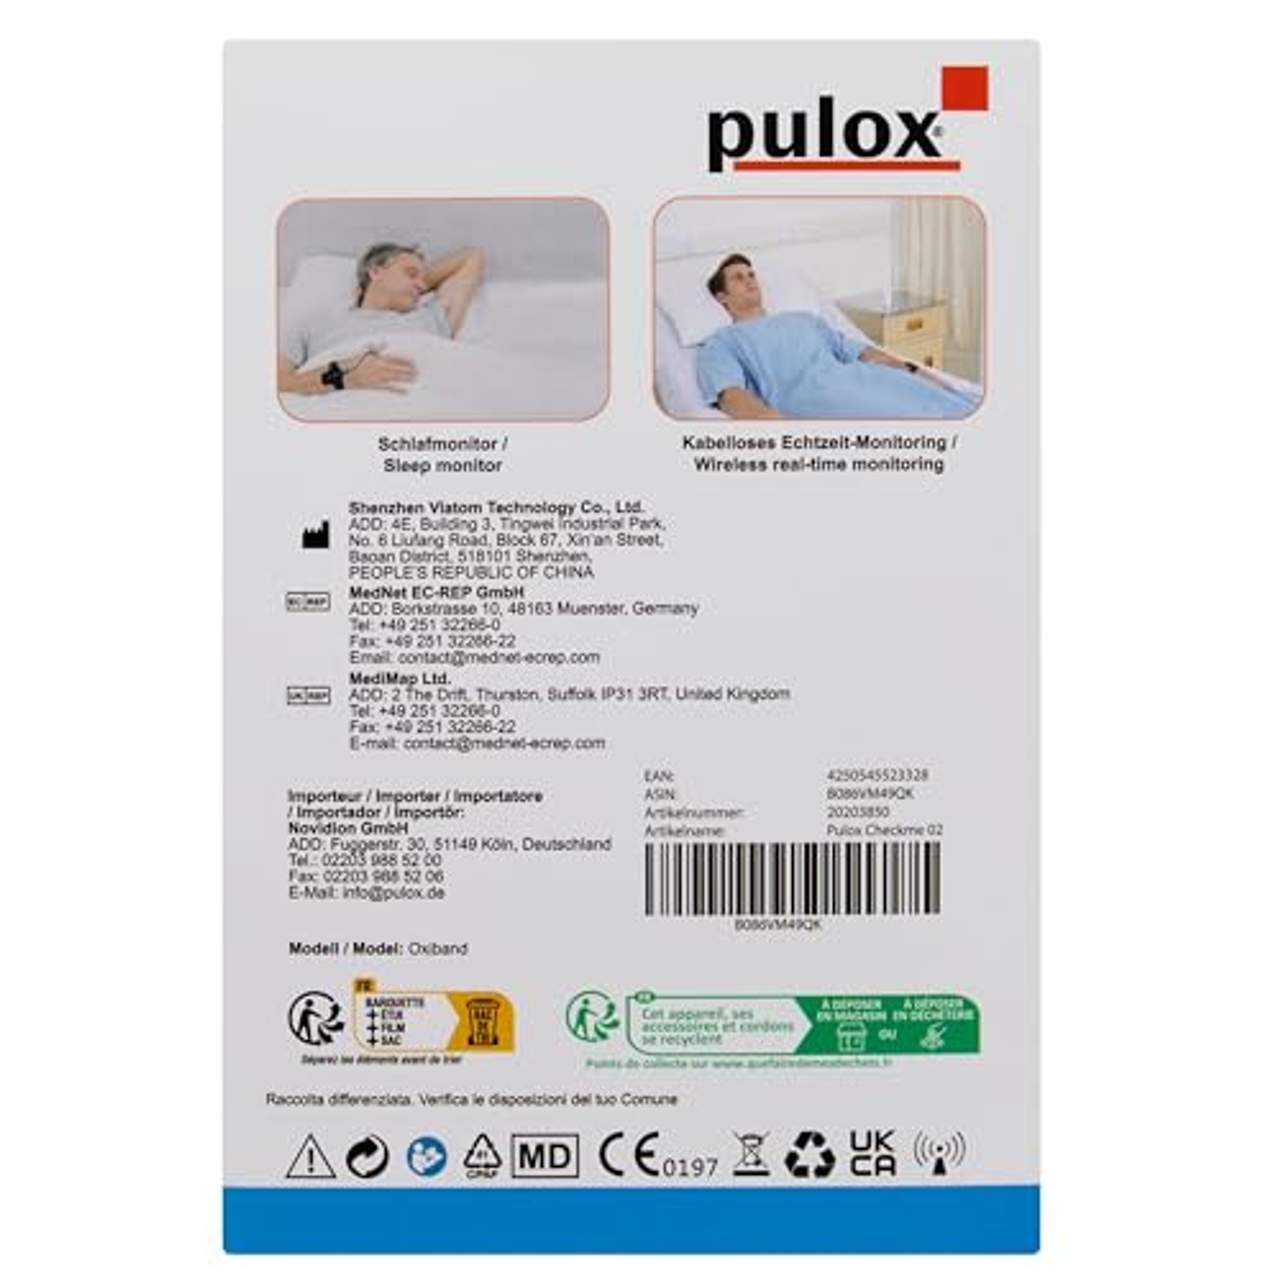 Pulox by Viatom Checkme O2 smartes Handgelenk Pulsoximeter